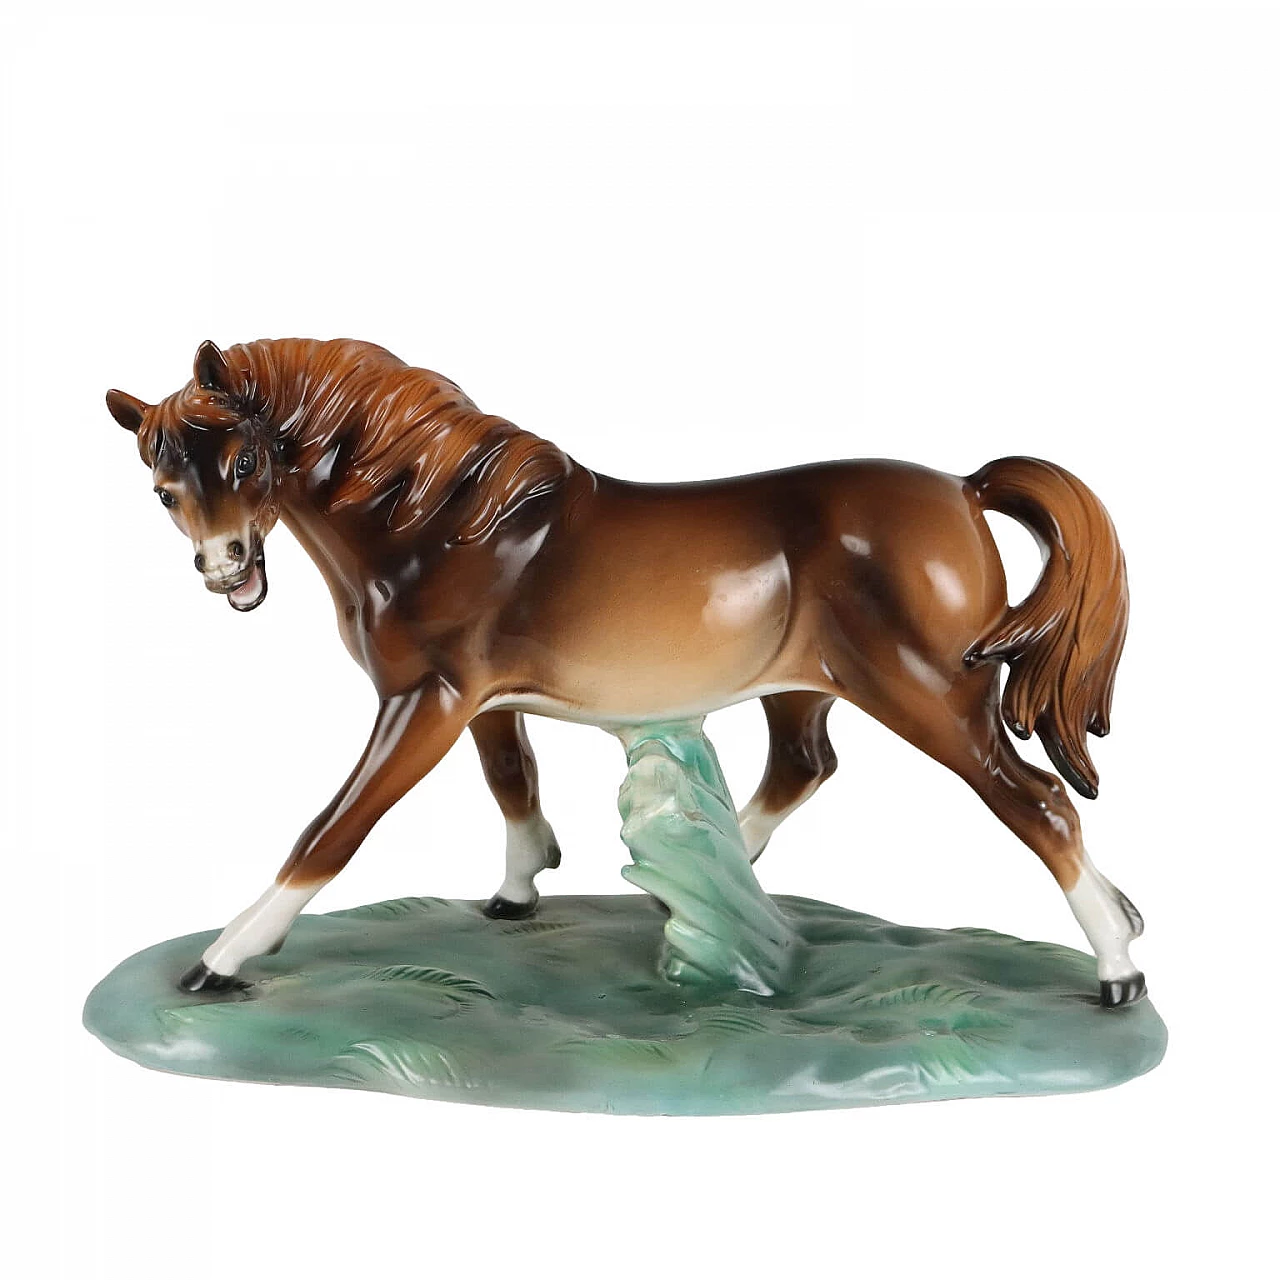 Ceramic horse sculpture by Antonio Ronzan 1